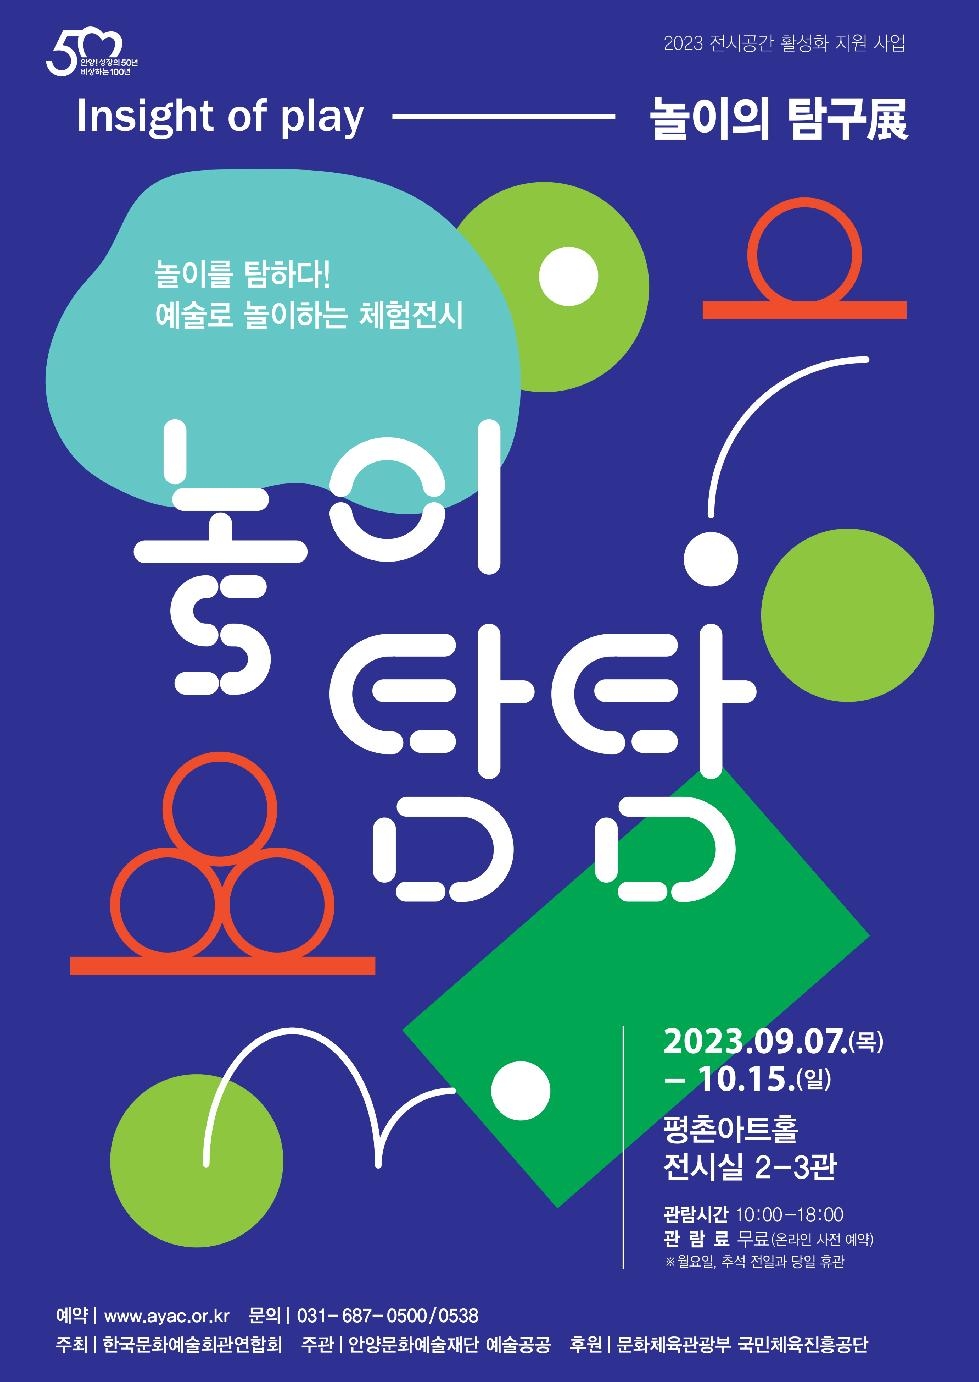 안양문화예술재단, 평촌아트홀에서 ‘놀이의 탐구展- 놀이탐탐’ 개최